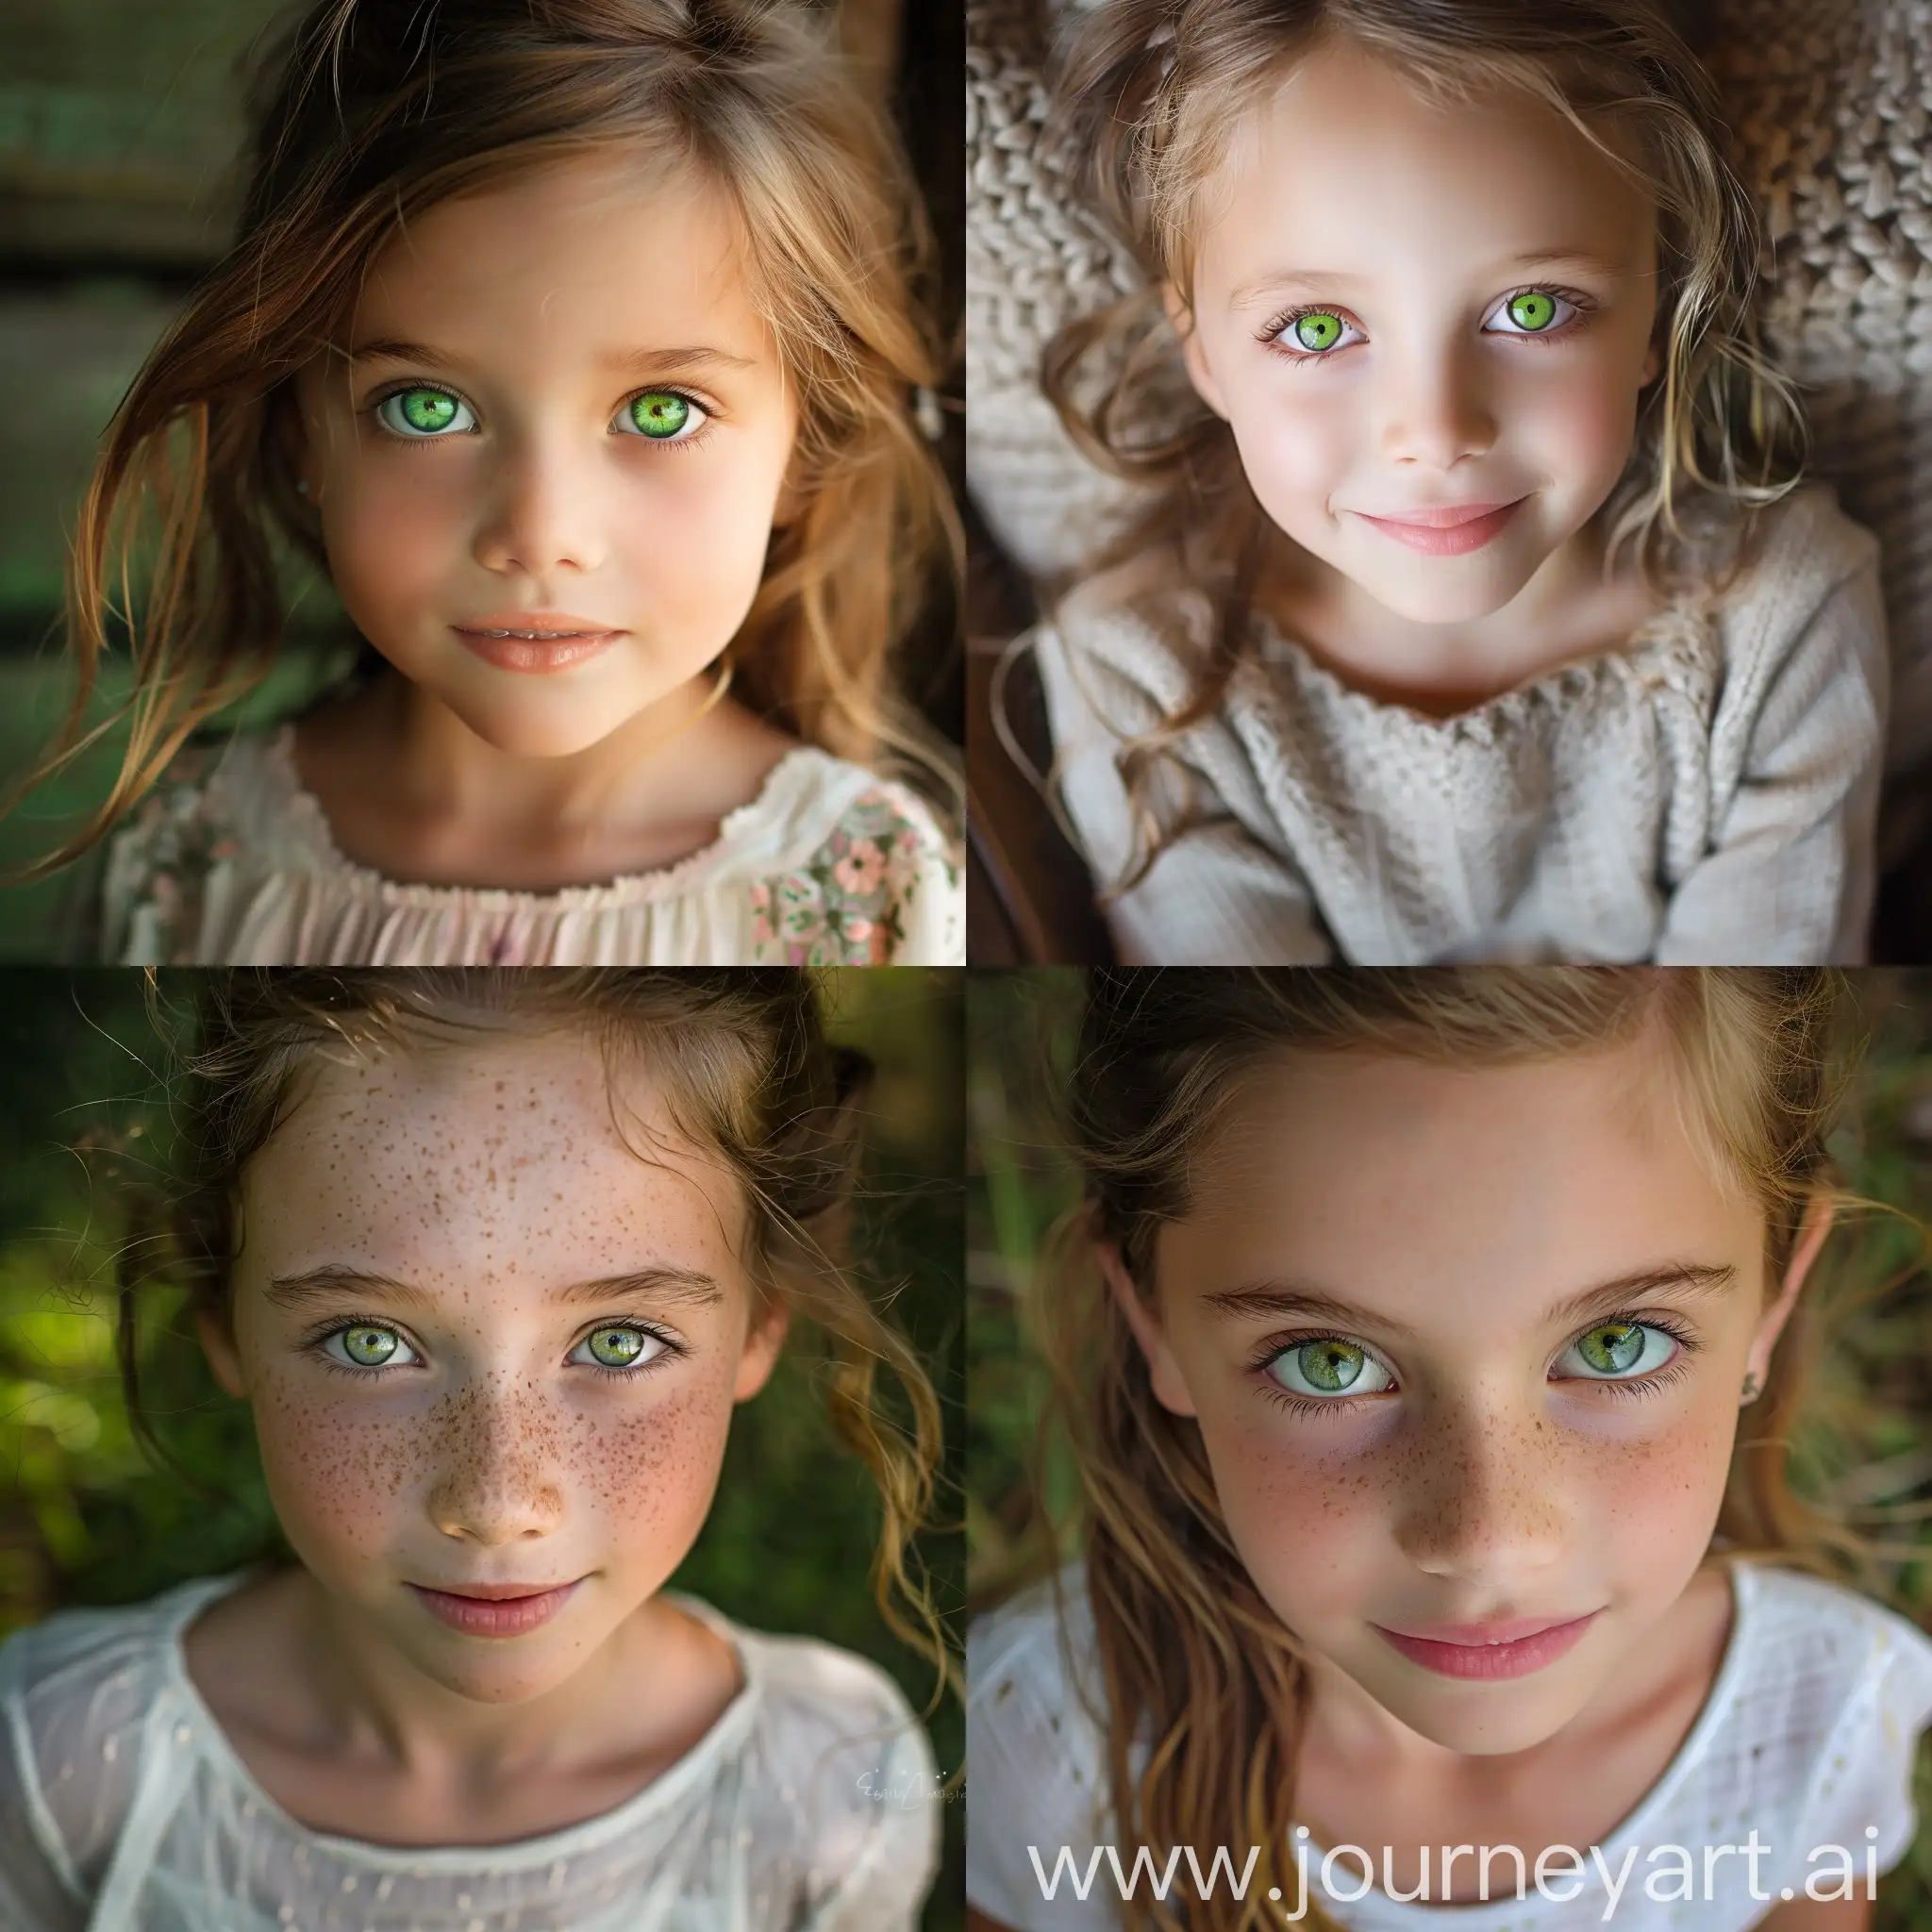 Joyful-GreenEyed-Girl-Portrait-Beautiful-Young-Girl-with-Enchanting-Green-Eyes